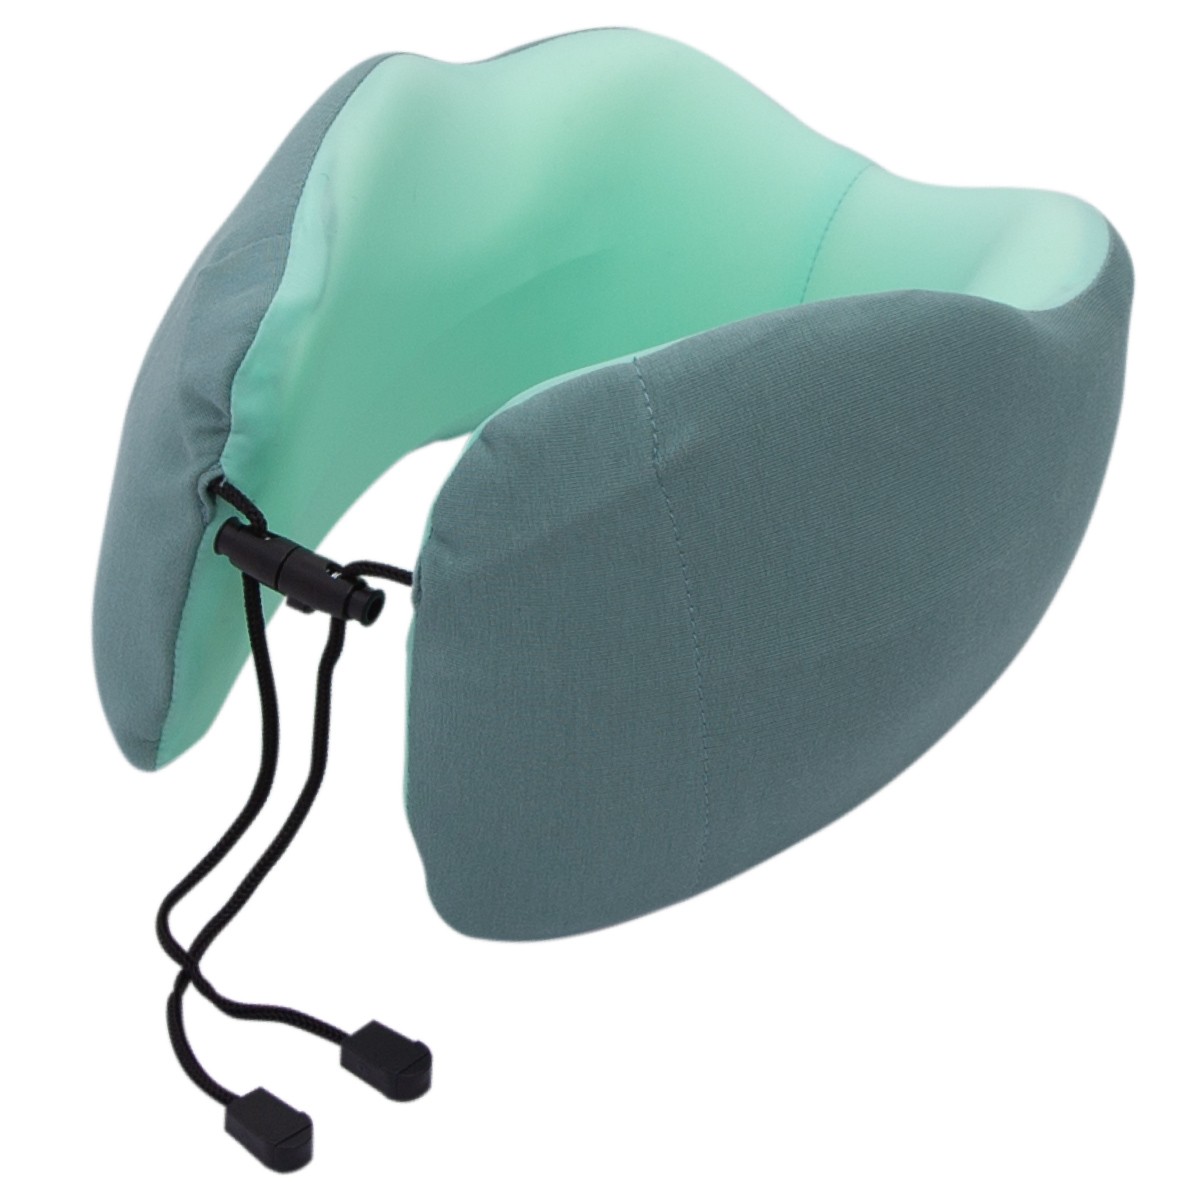 ネックピロー 首枕 飛行機 快適グッズ トラベルピロー 携帯枕 ネッククッション 旅行枕 送料無料